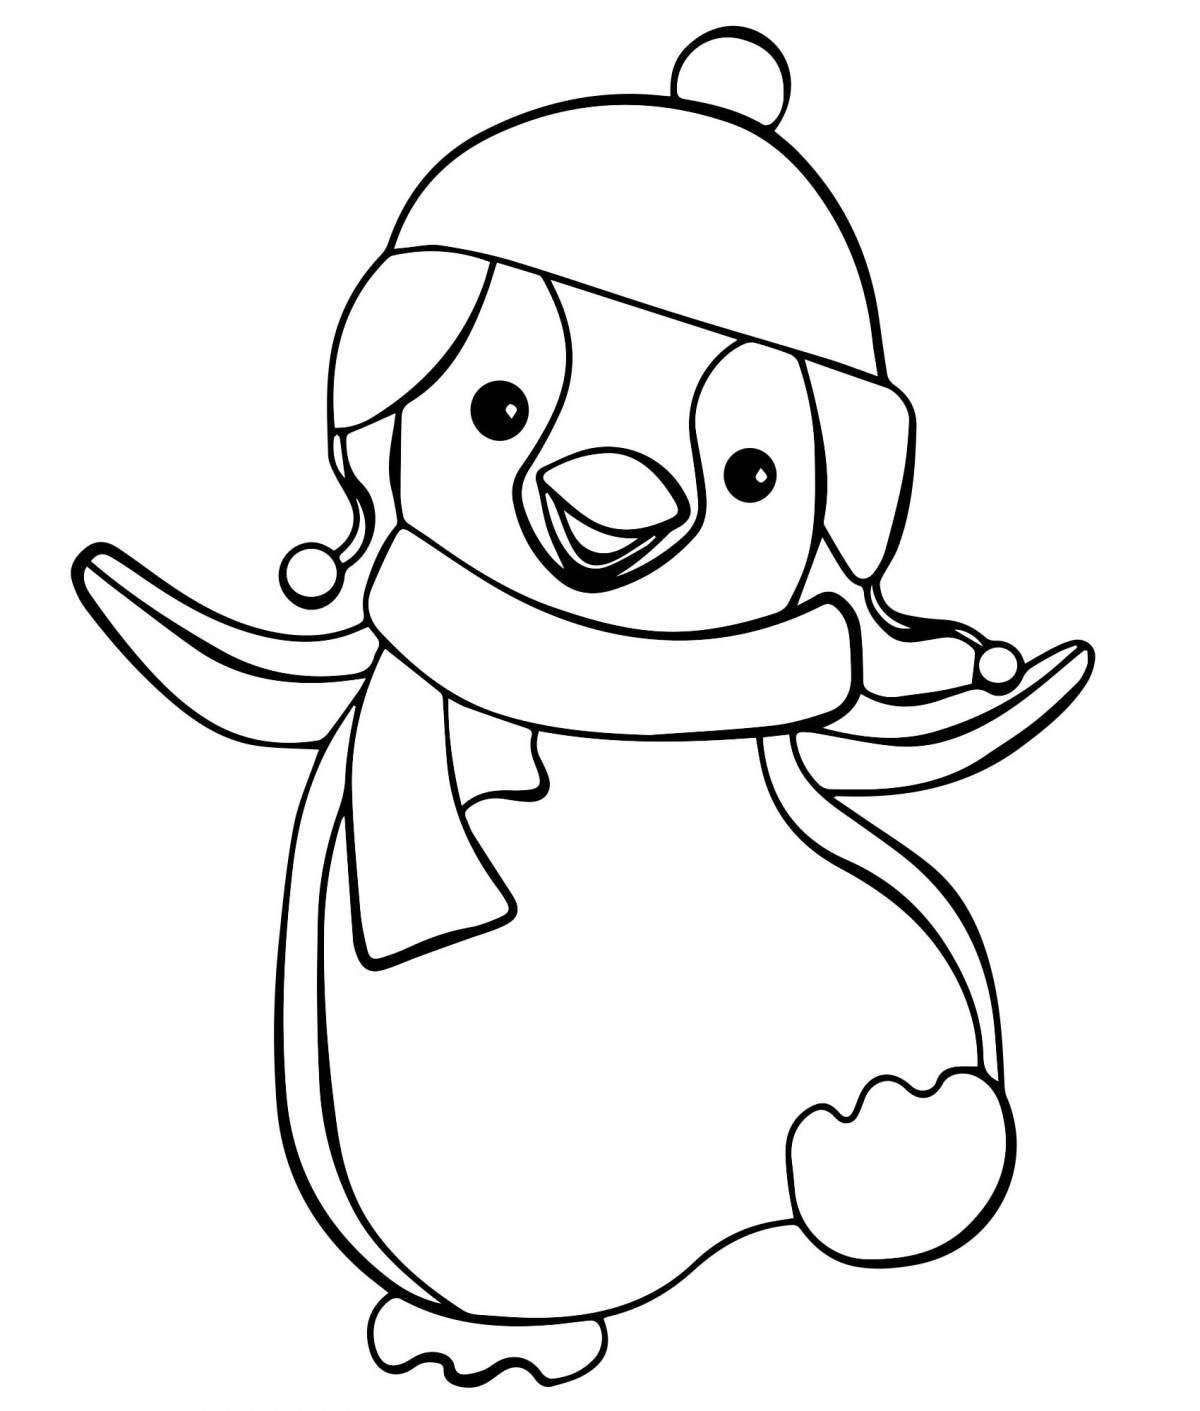 Cute little penguin coloring page